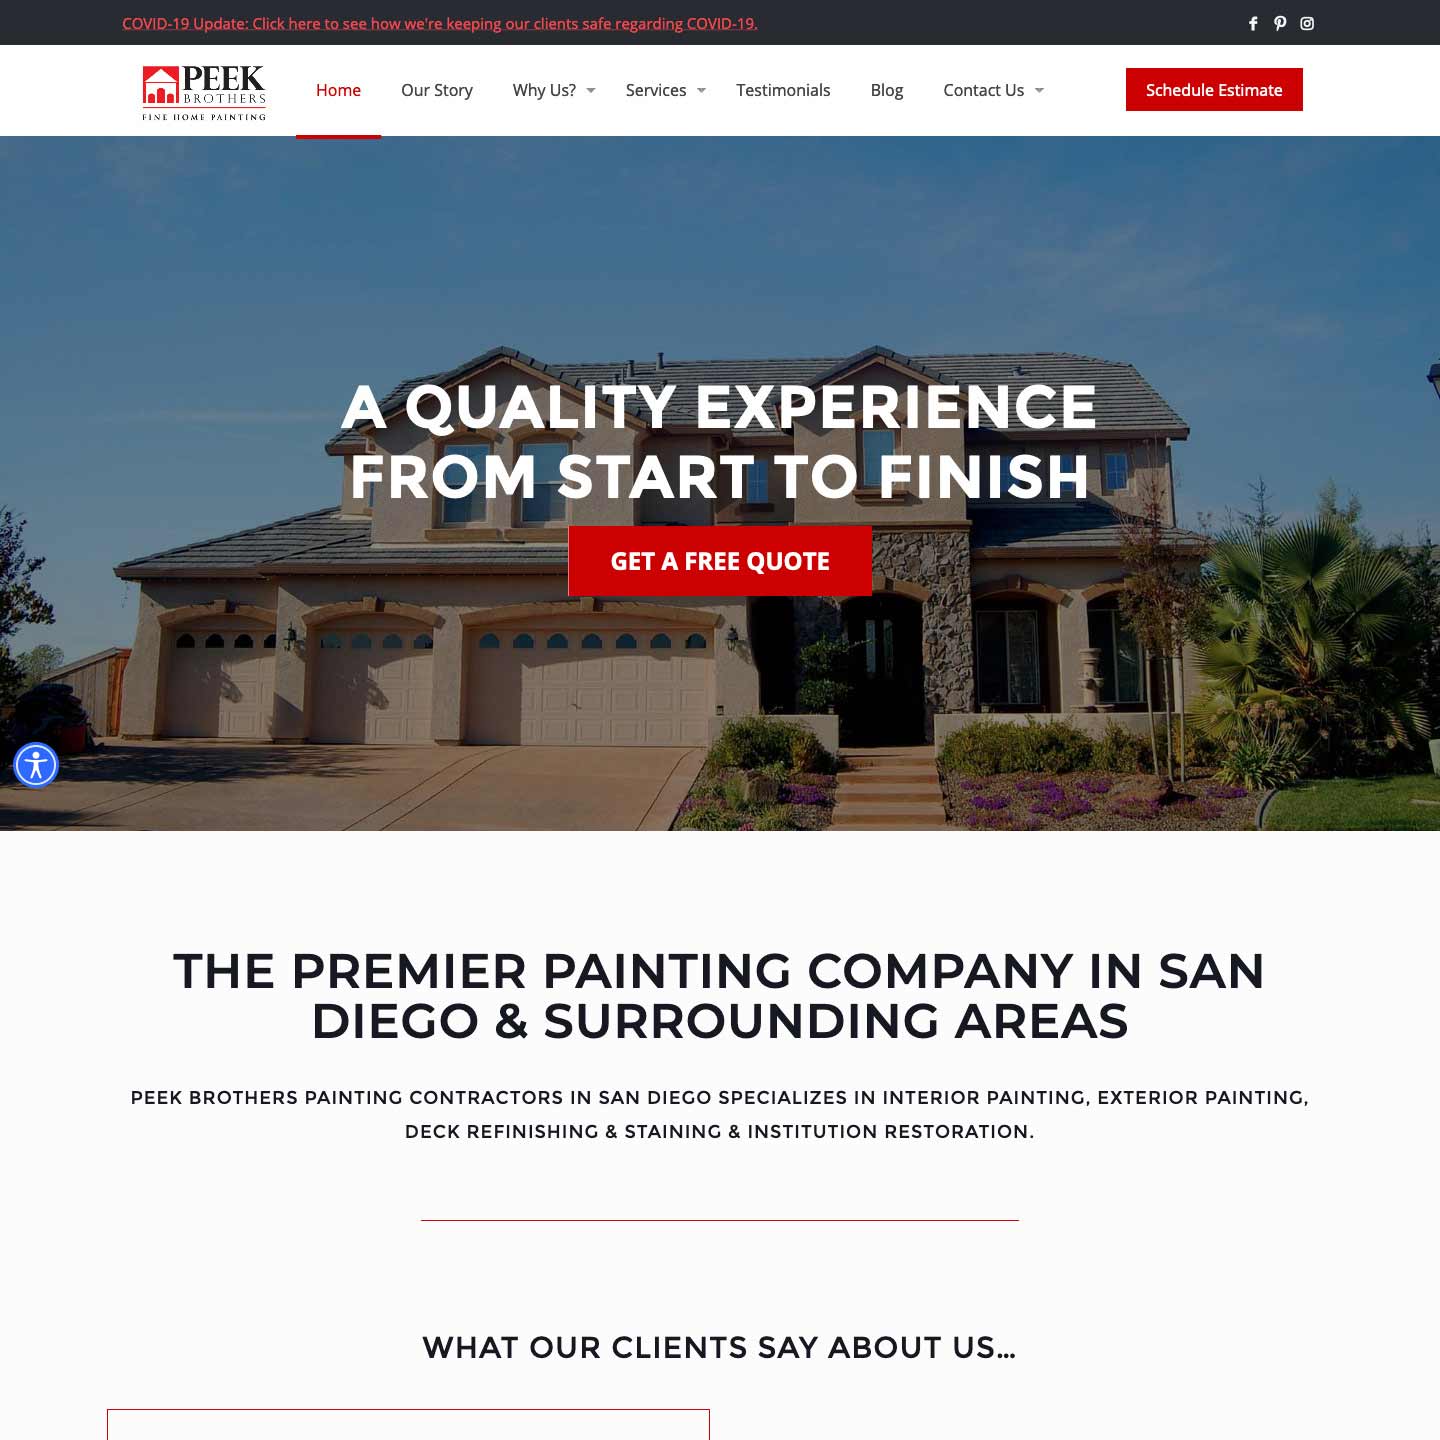 Peek Brothers Home Painting website